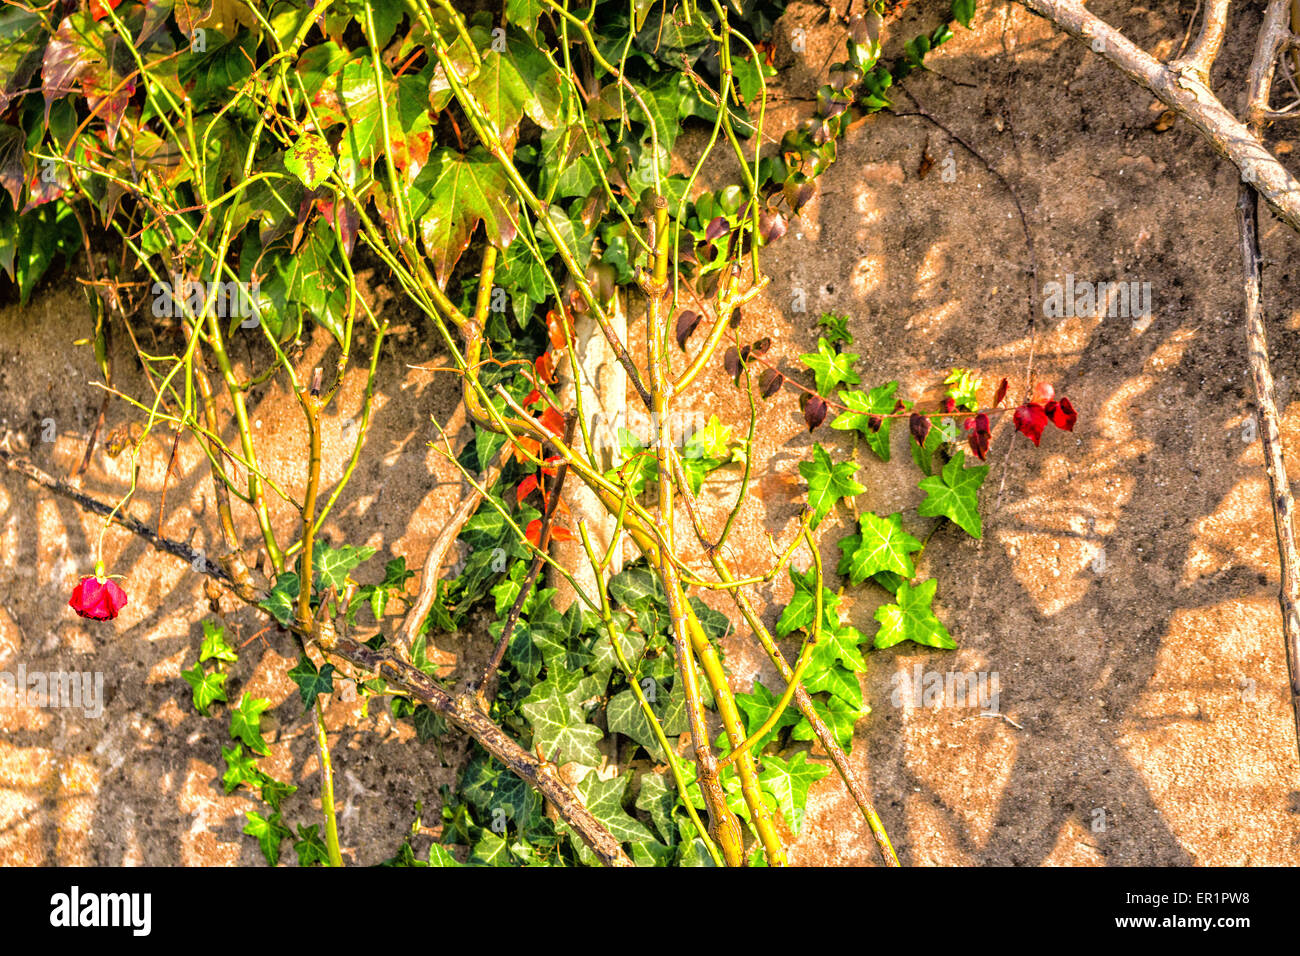 Rouge, vert et orange feuilles d'un réducteur japonais, du Parthenocissus tricuspidata veitchii, lierre vert et rose et rouge à l'automne sur un vieux mur grunge dans un agriculteur typique maison en campagne italienne Banque D'Images